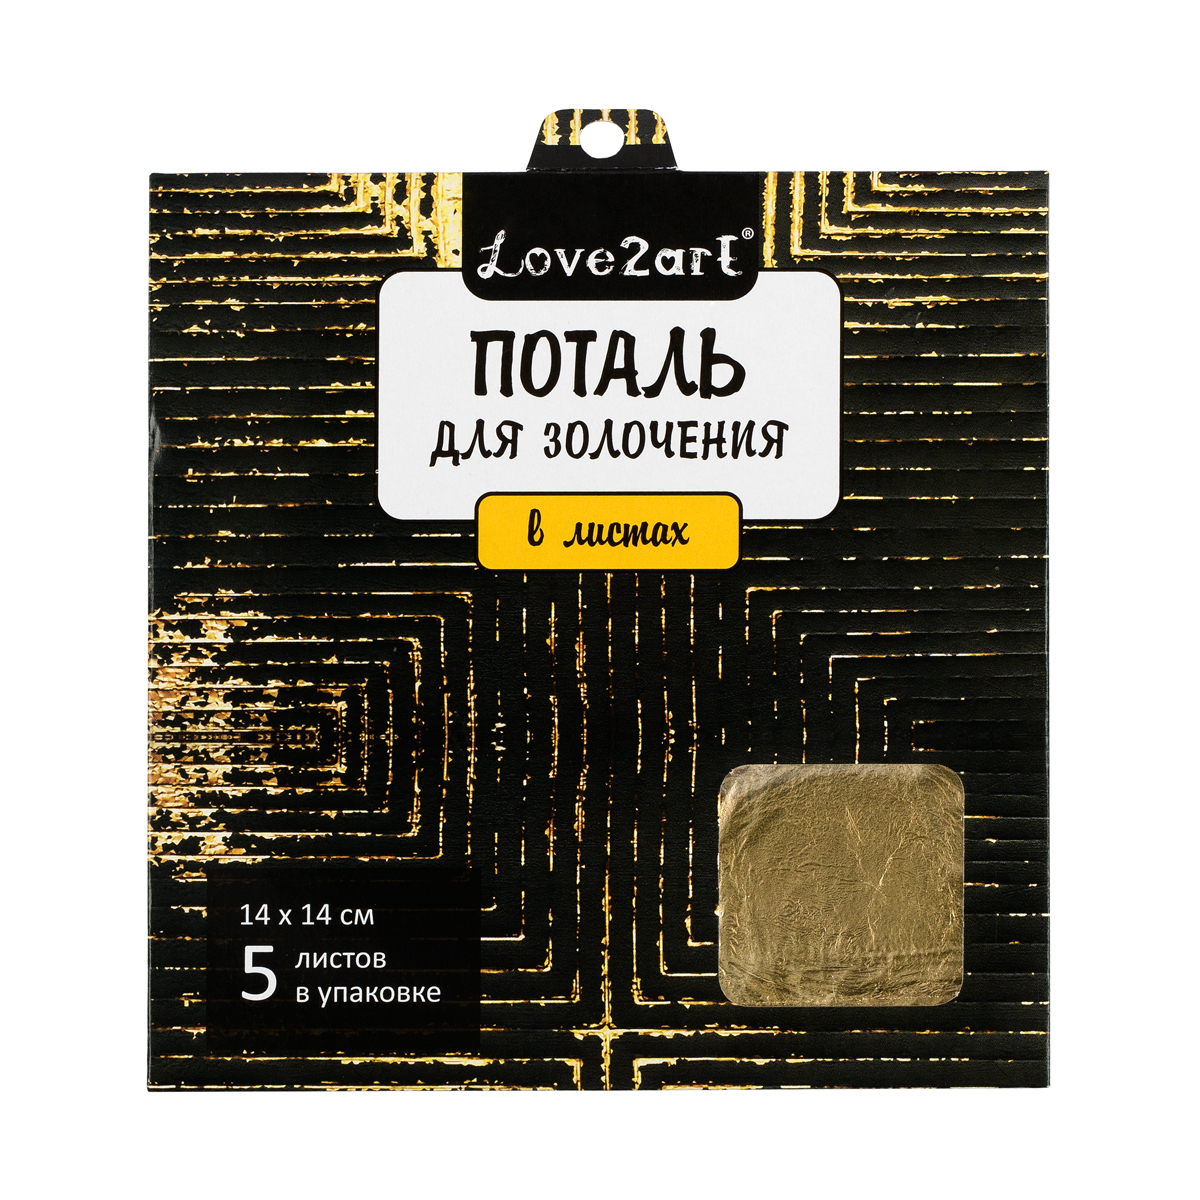 Love2art Поталь для золочения в листах MLS-145 14 x 14 см 5 листов 01L золотой Фото 1.